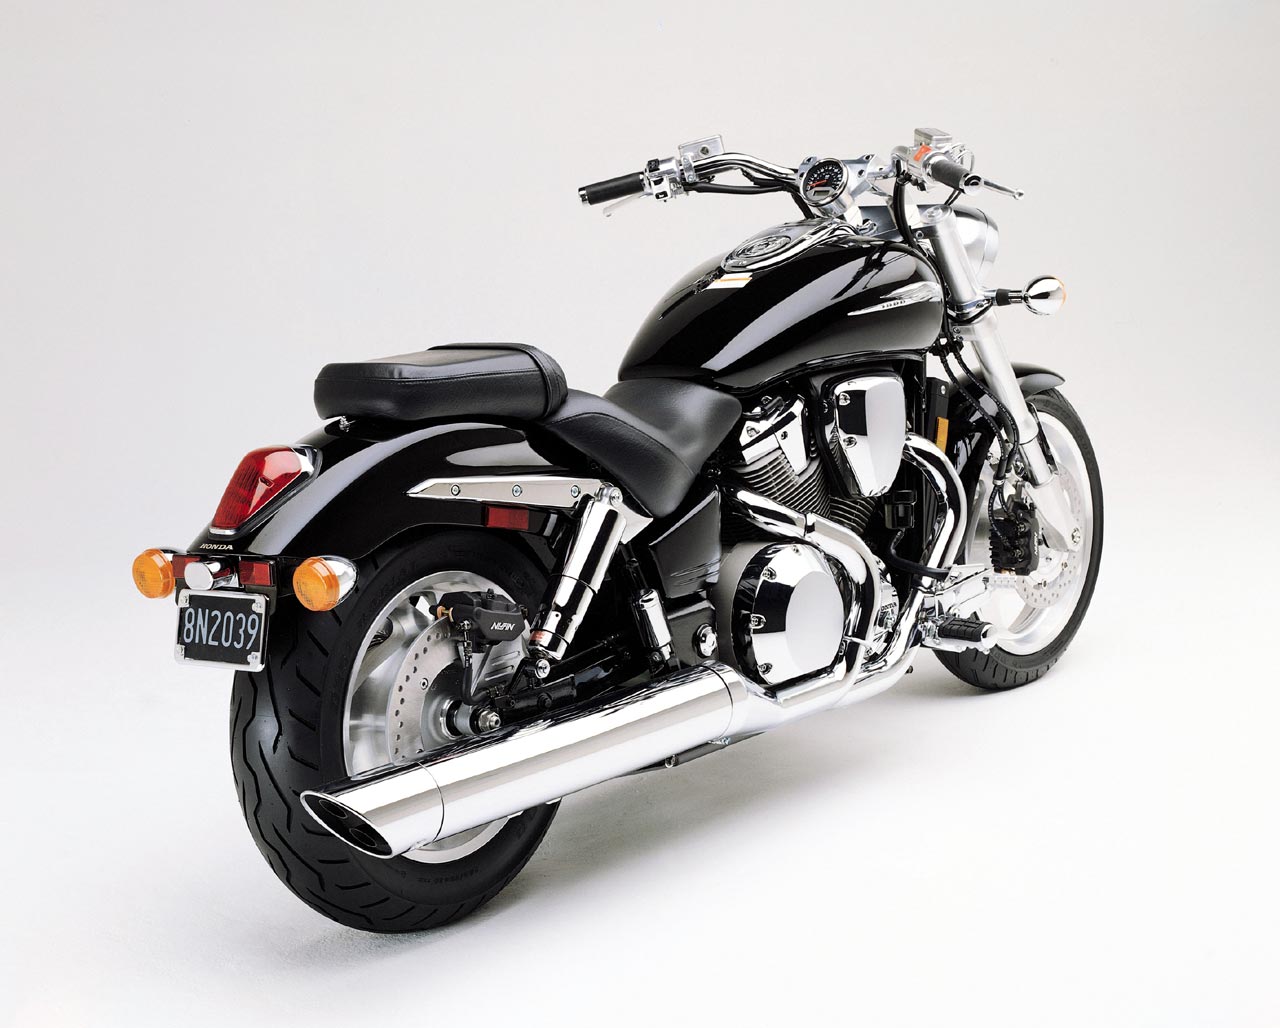 Honda Vtx 1800 I Vtx 1300 –”Nie Ma Mocnych” | Motocykle Jarocin – Serwis Motocyklowy, Części Do Motocykli, Artykuły I Ciekawostki.